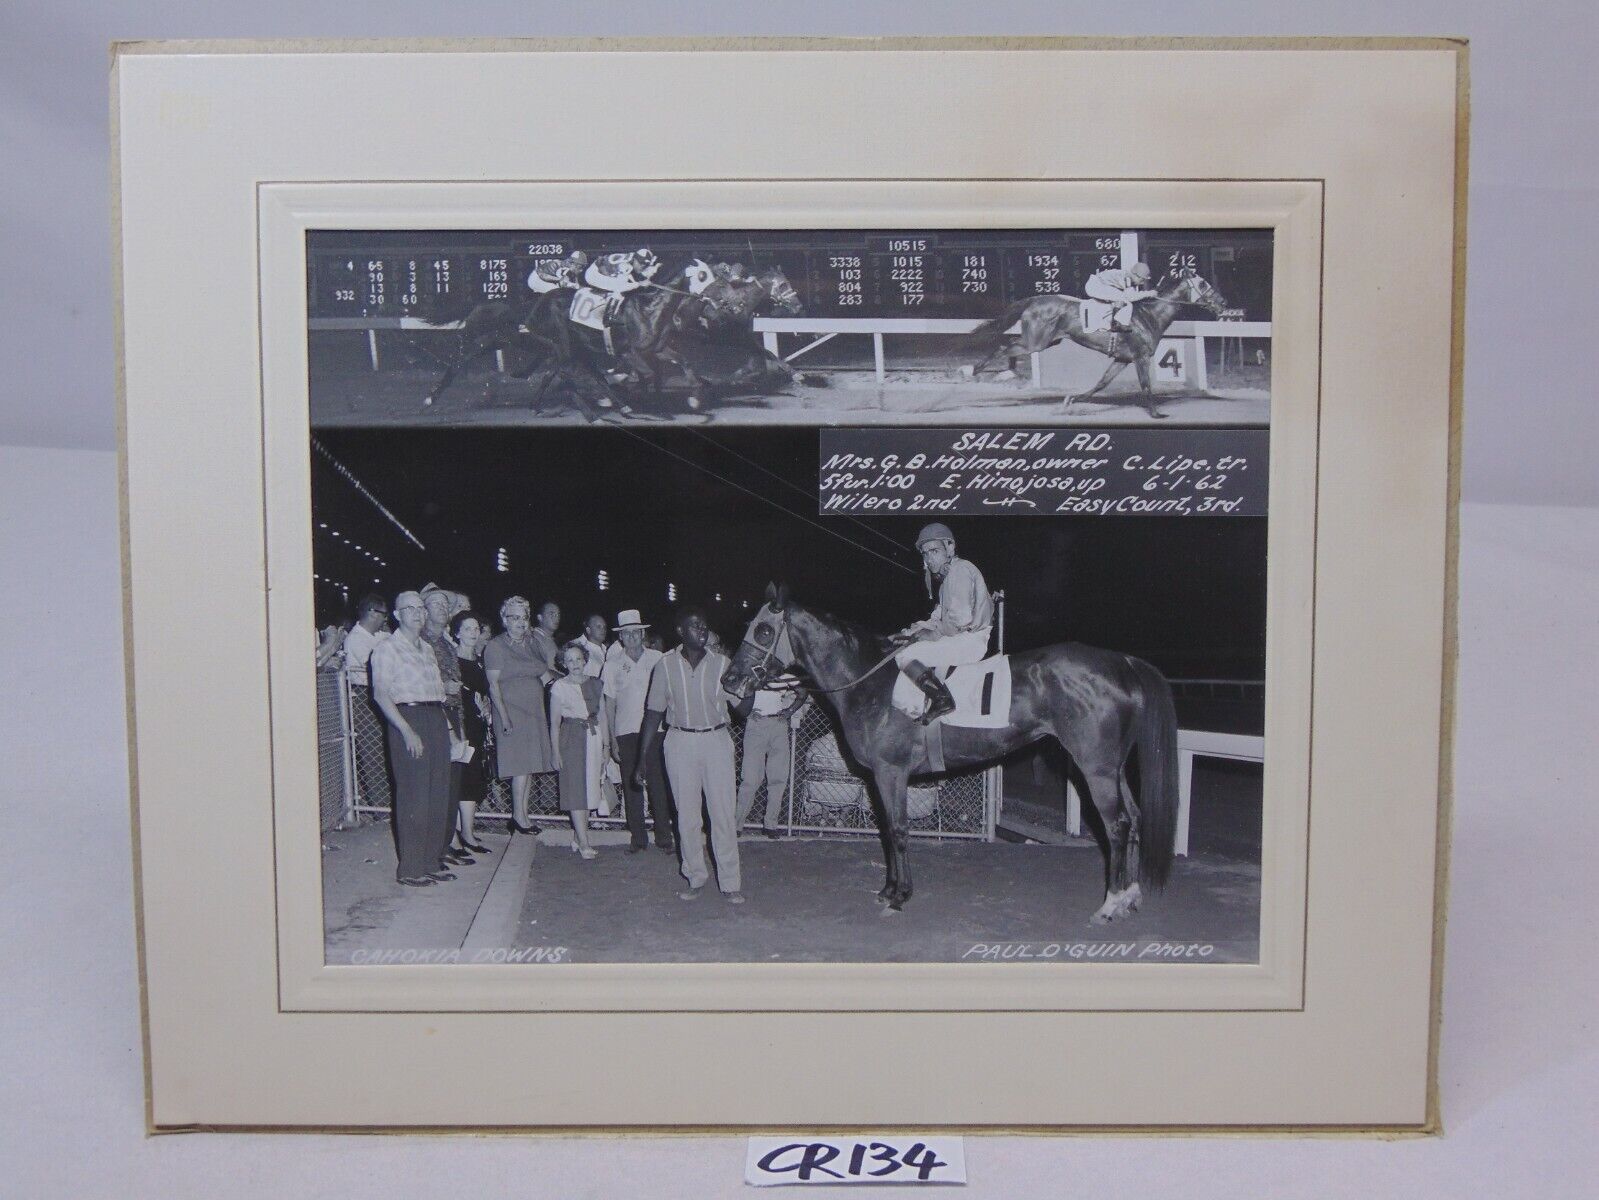 6-1-1960 PRESS PHOTO JOCKEYS ON HORSES RACE AT CAHOKIA DOWNS-SALEM RD.-C LIPE 